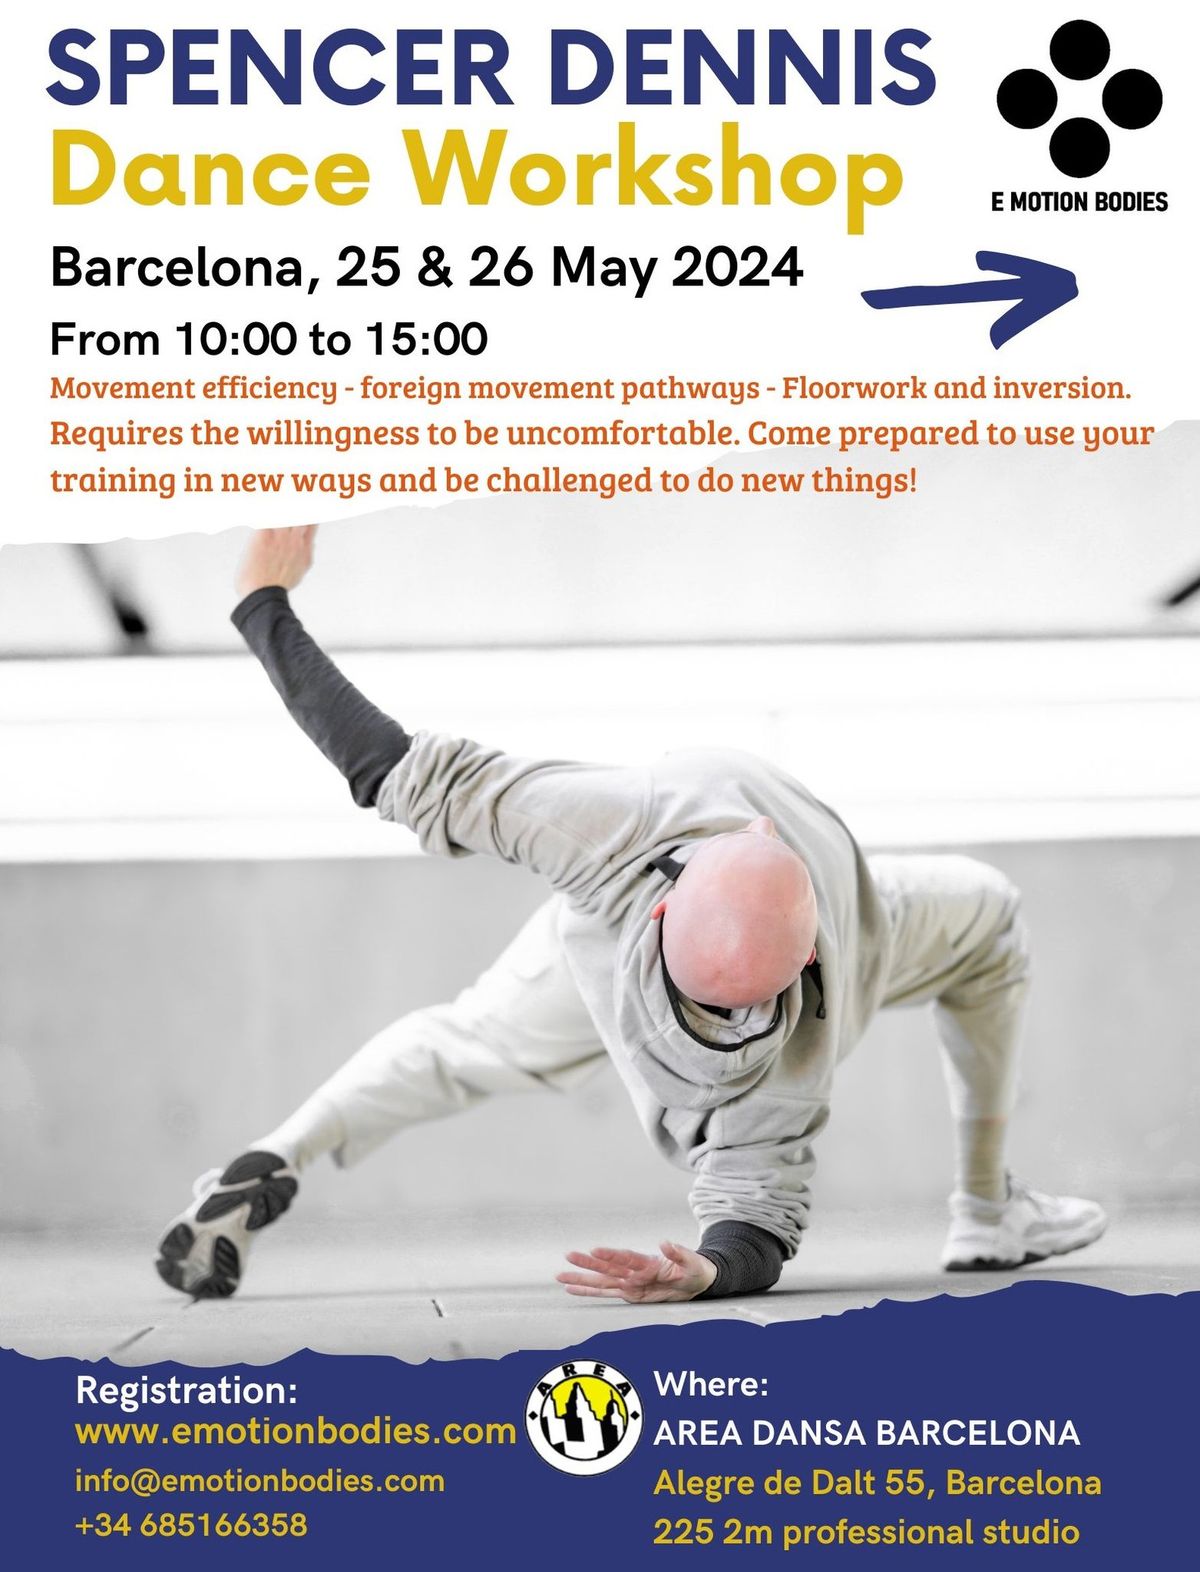 Spencer Dennis Dance workshop - Barcelona 25 & 26 May 2024